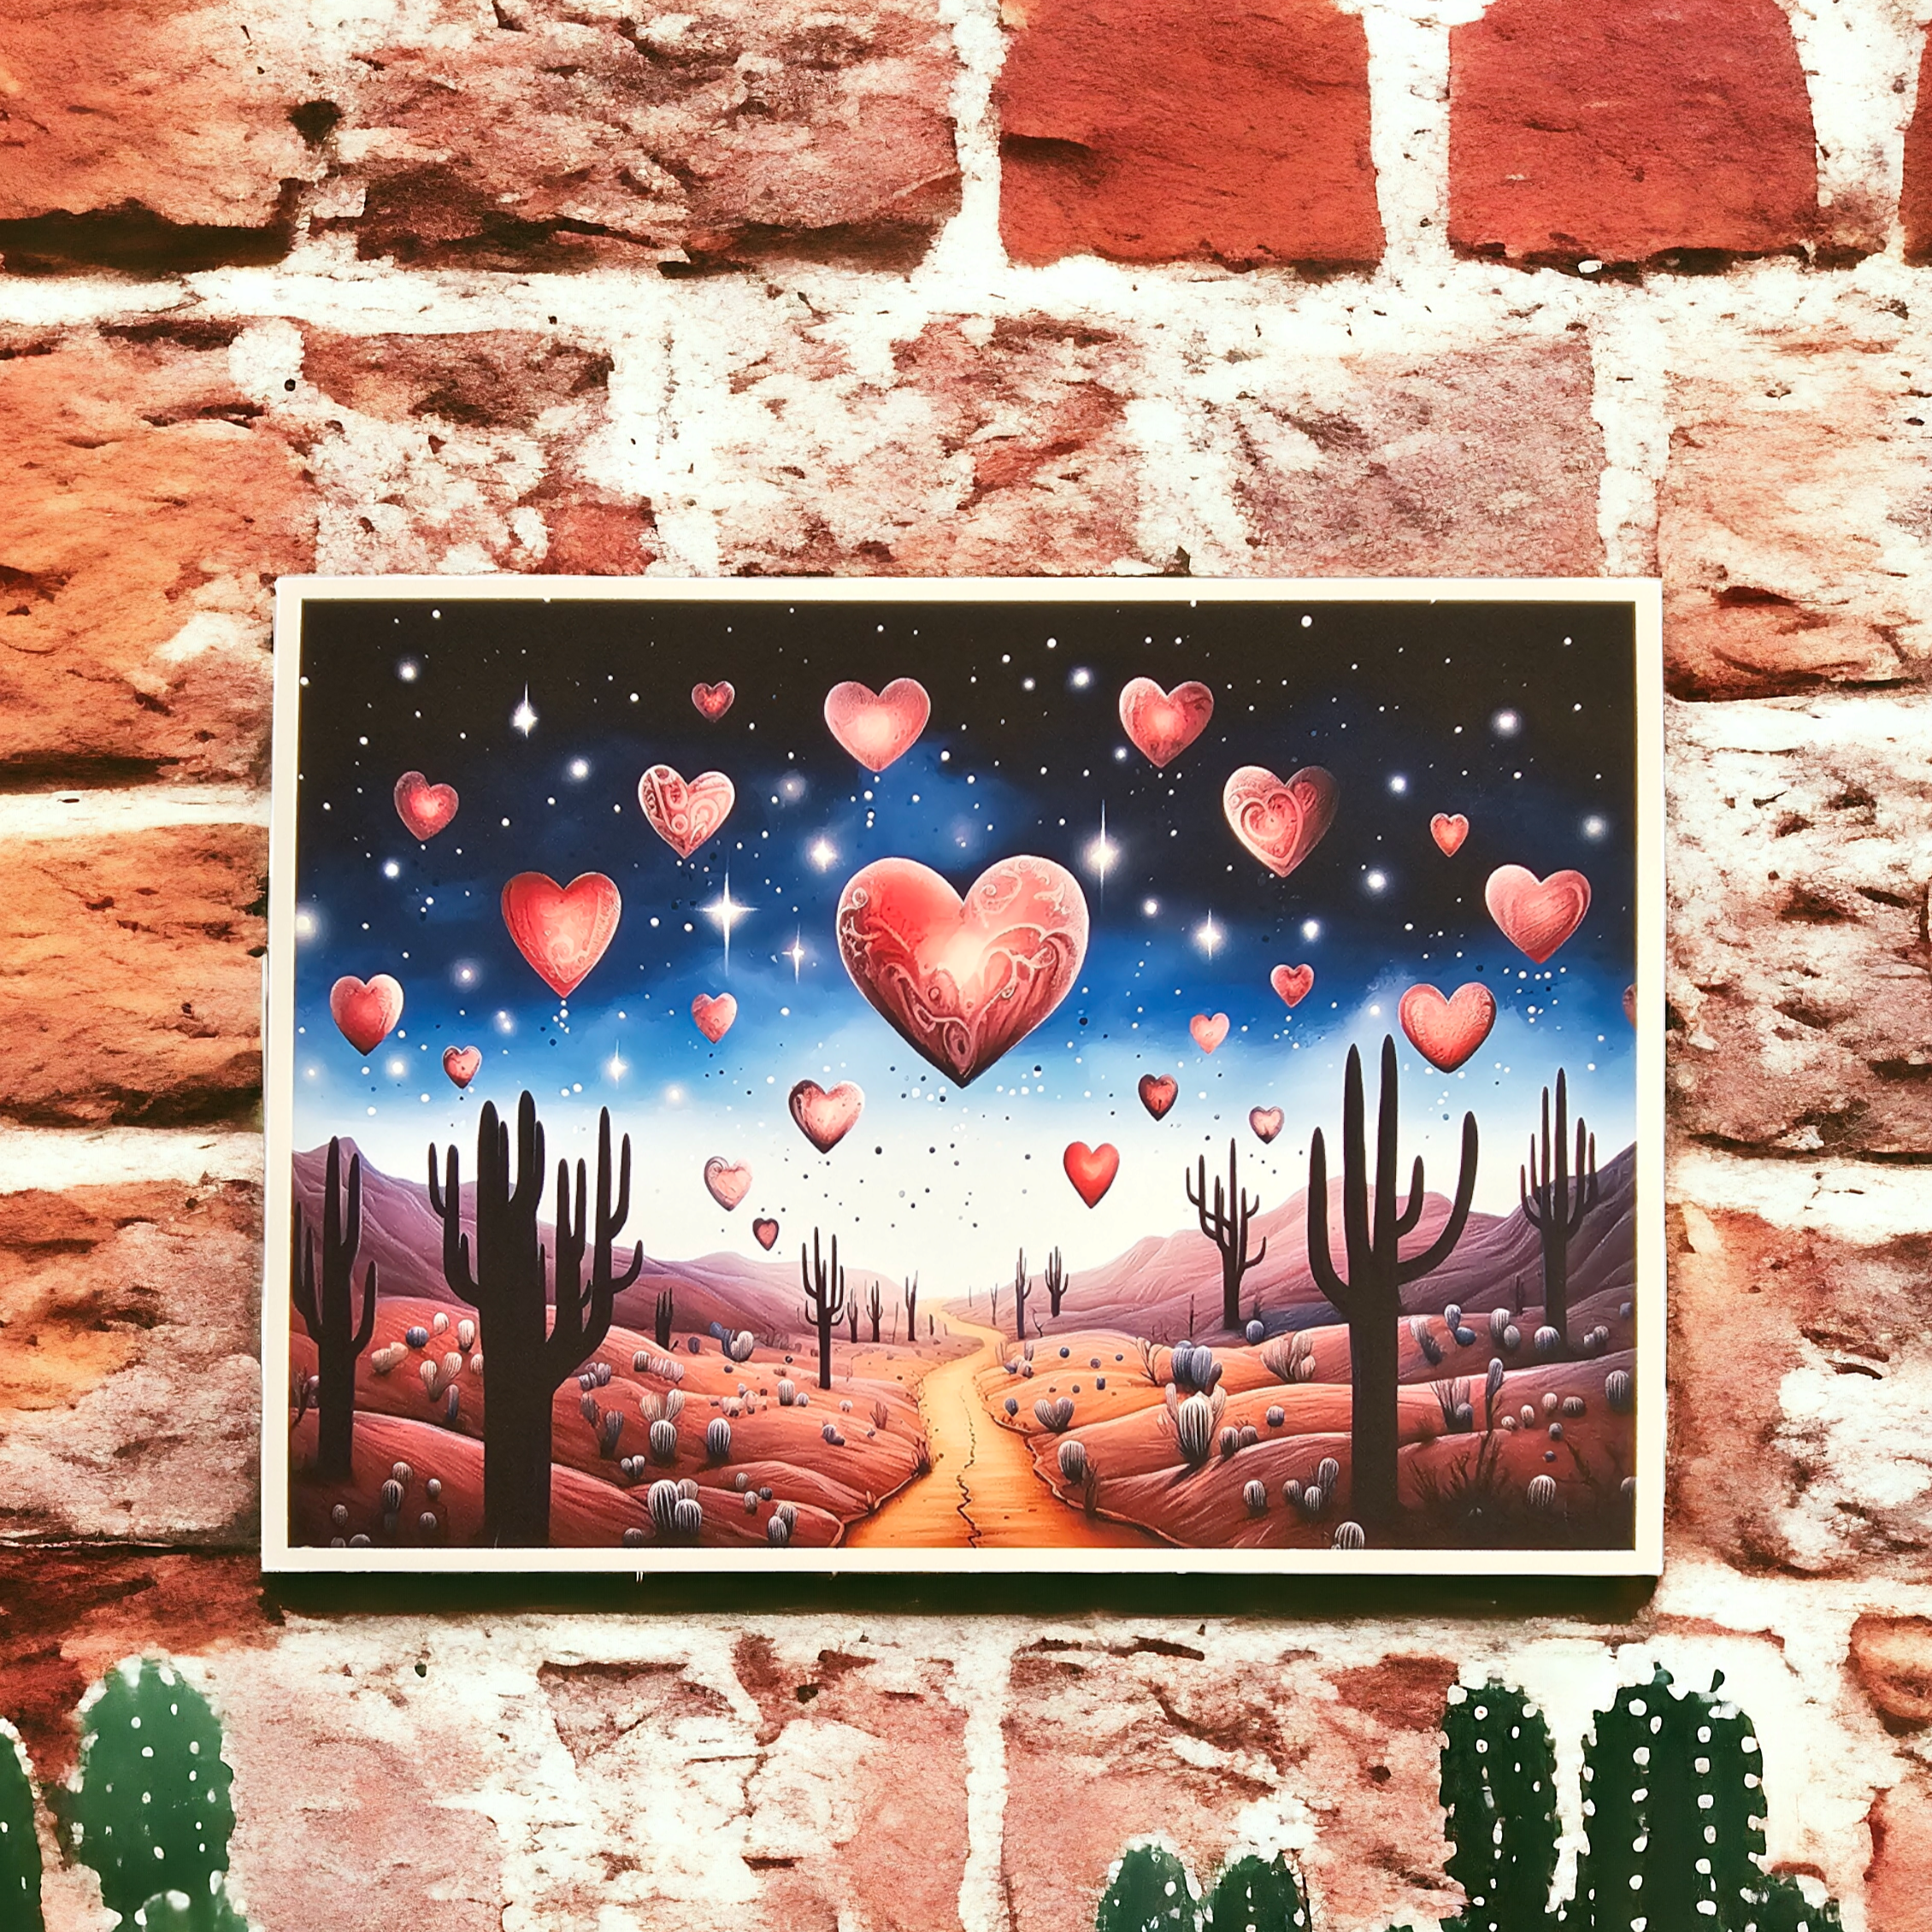 Starry Embrace: Desert Love Art Print